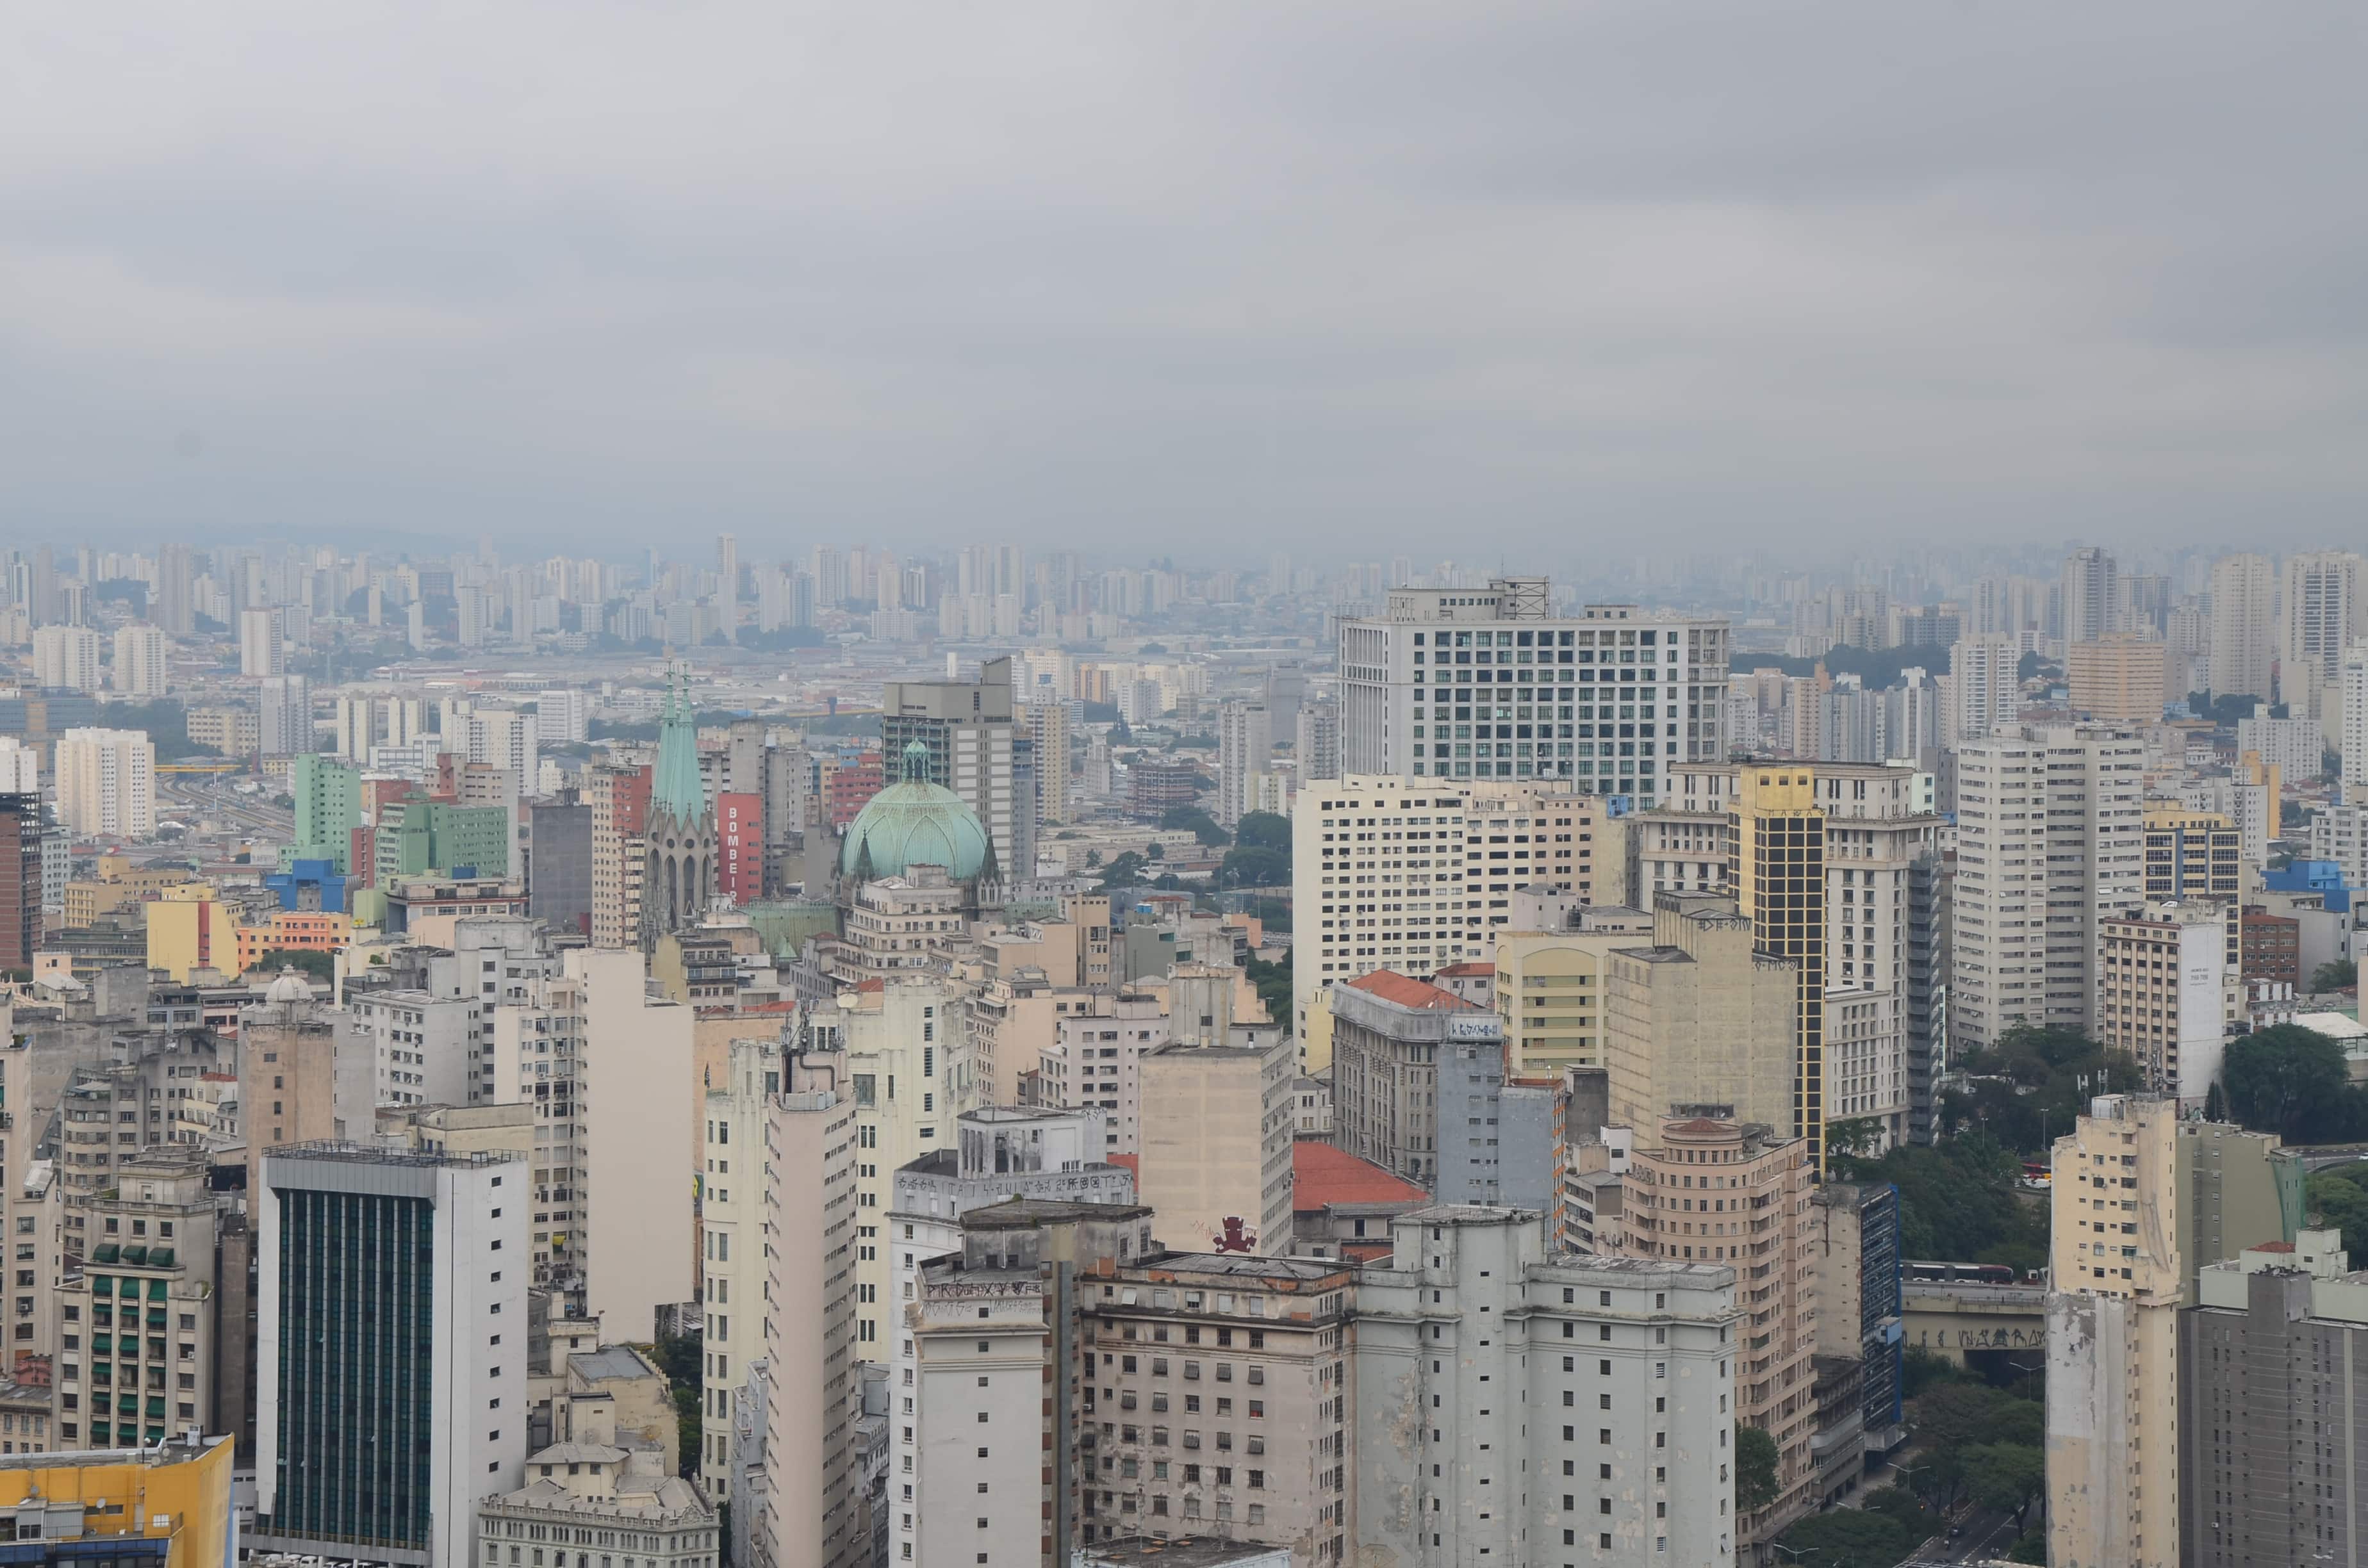 The view from Edifício Itália in São Paulo, Brazil